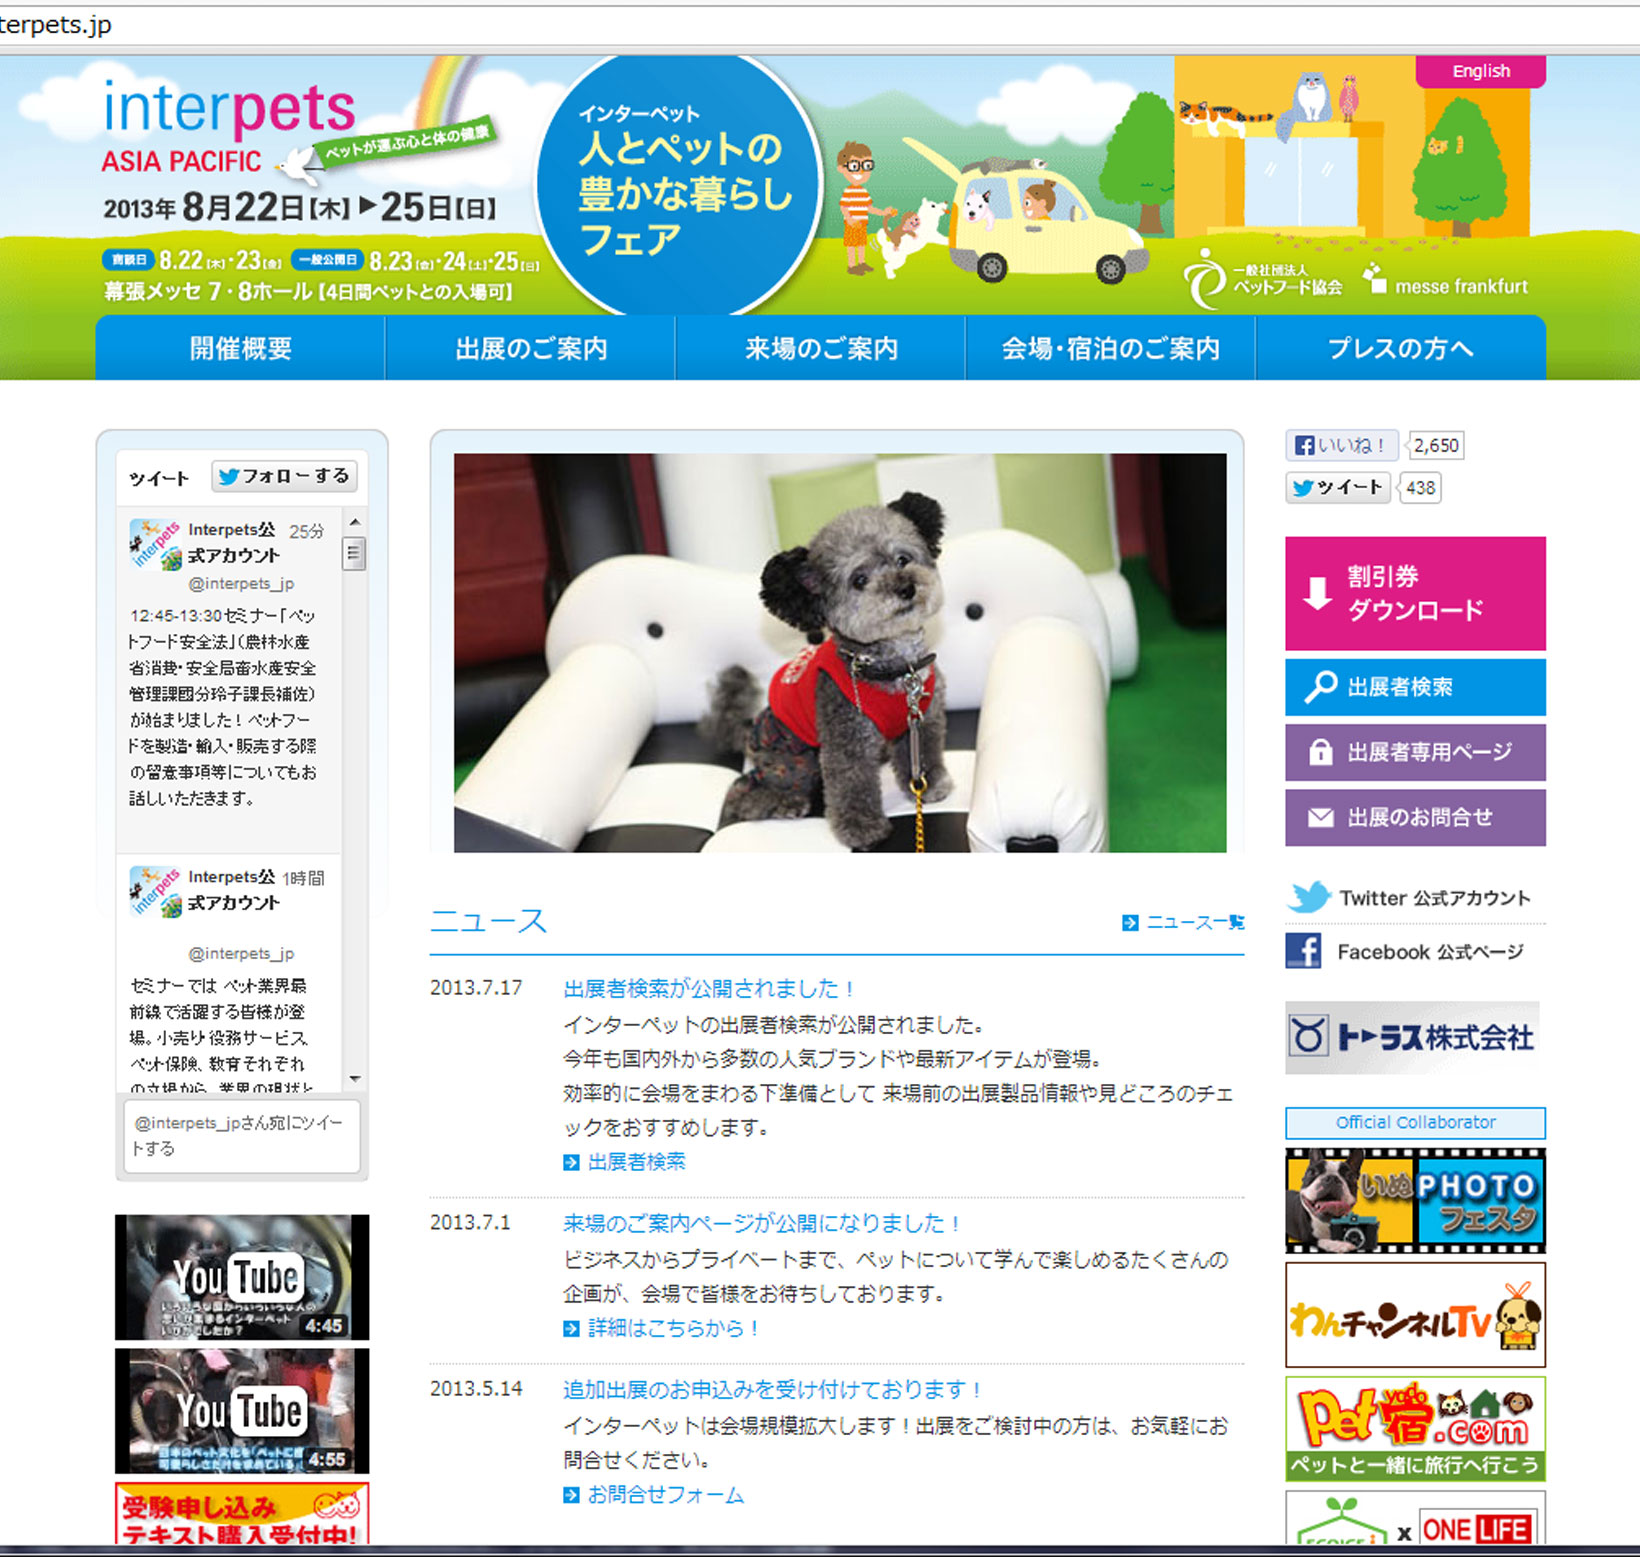 http://www.colorworks.co.jp/weblog/2013/08/22/interpets.jpg